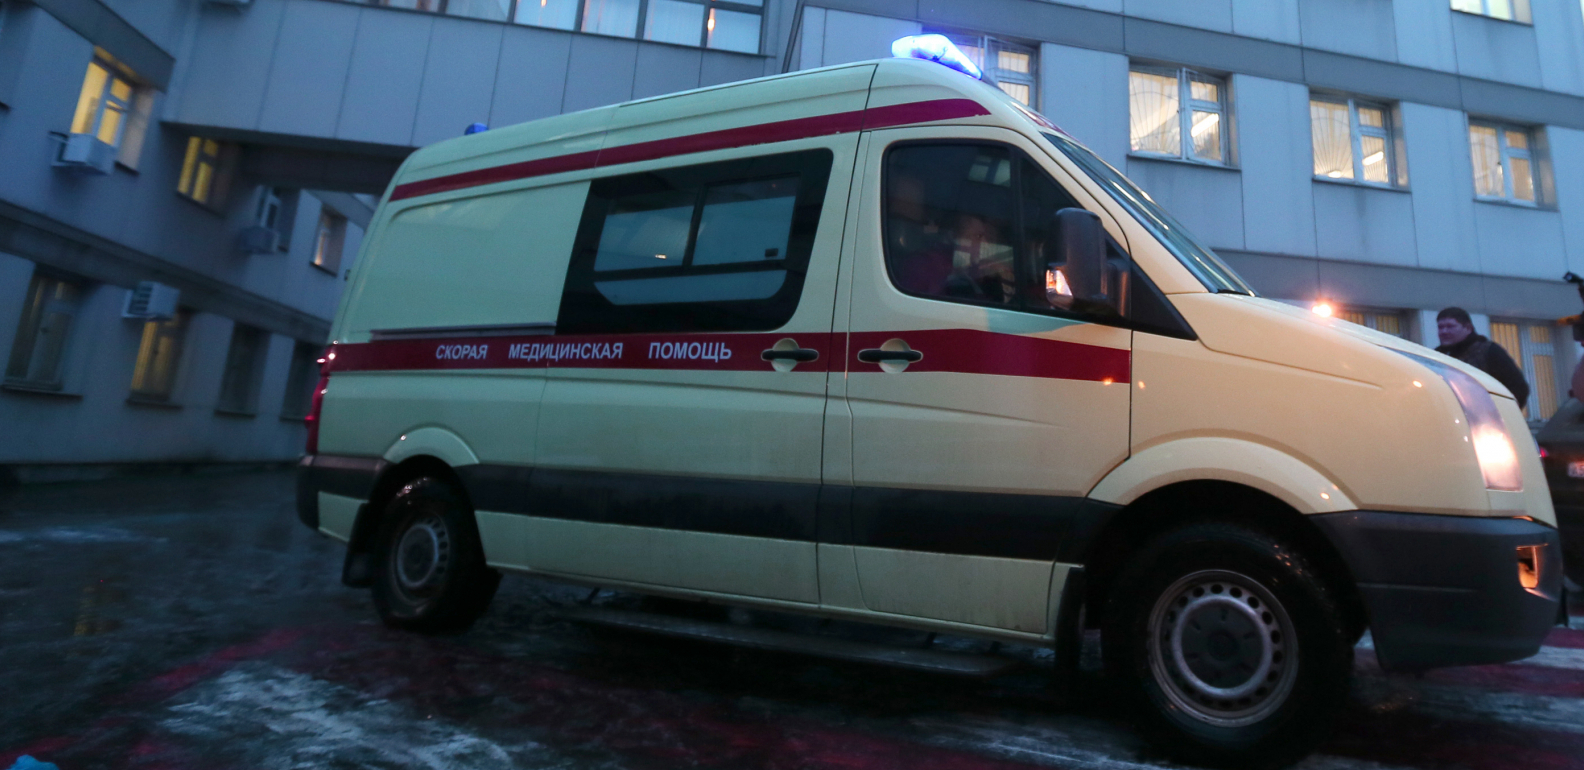 HOROR U RUSIJI! Devojčica pronađena mrtva dan nakon proslave rođendana, obdukcijom otkriveni jezivi dokazi!